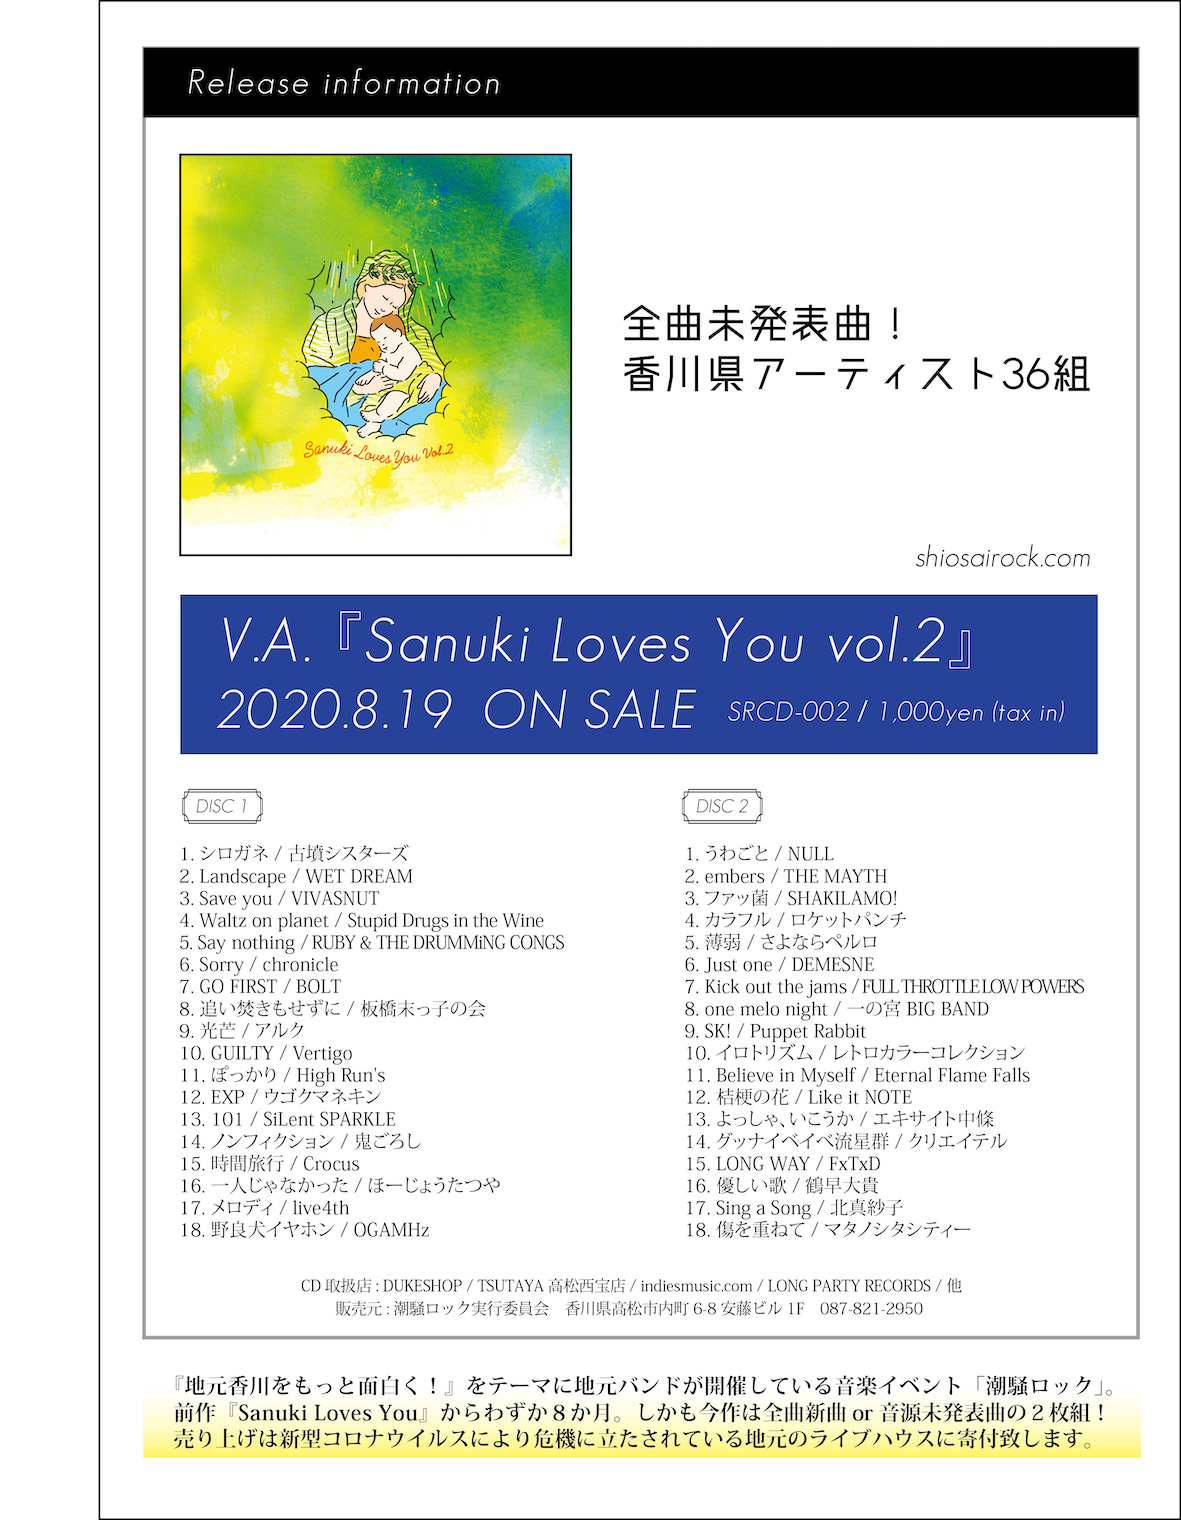 Sanuki Loves You vol.2